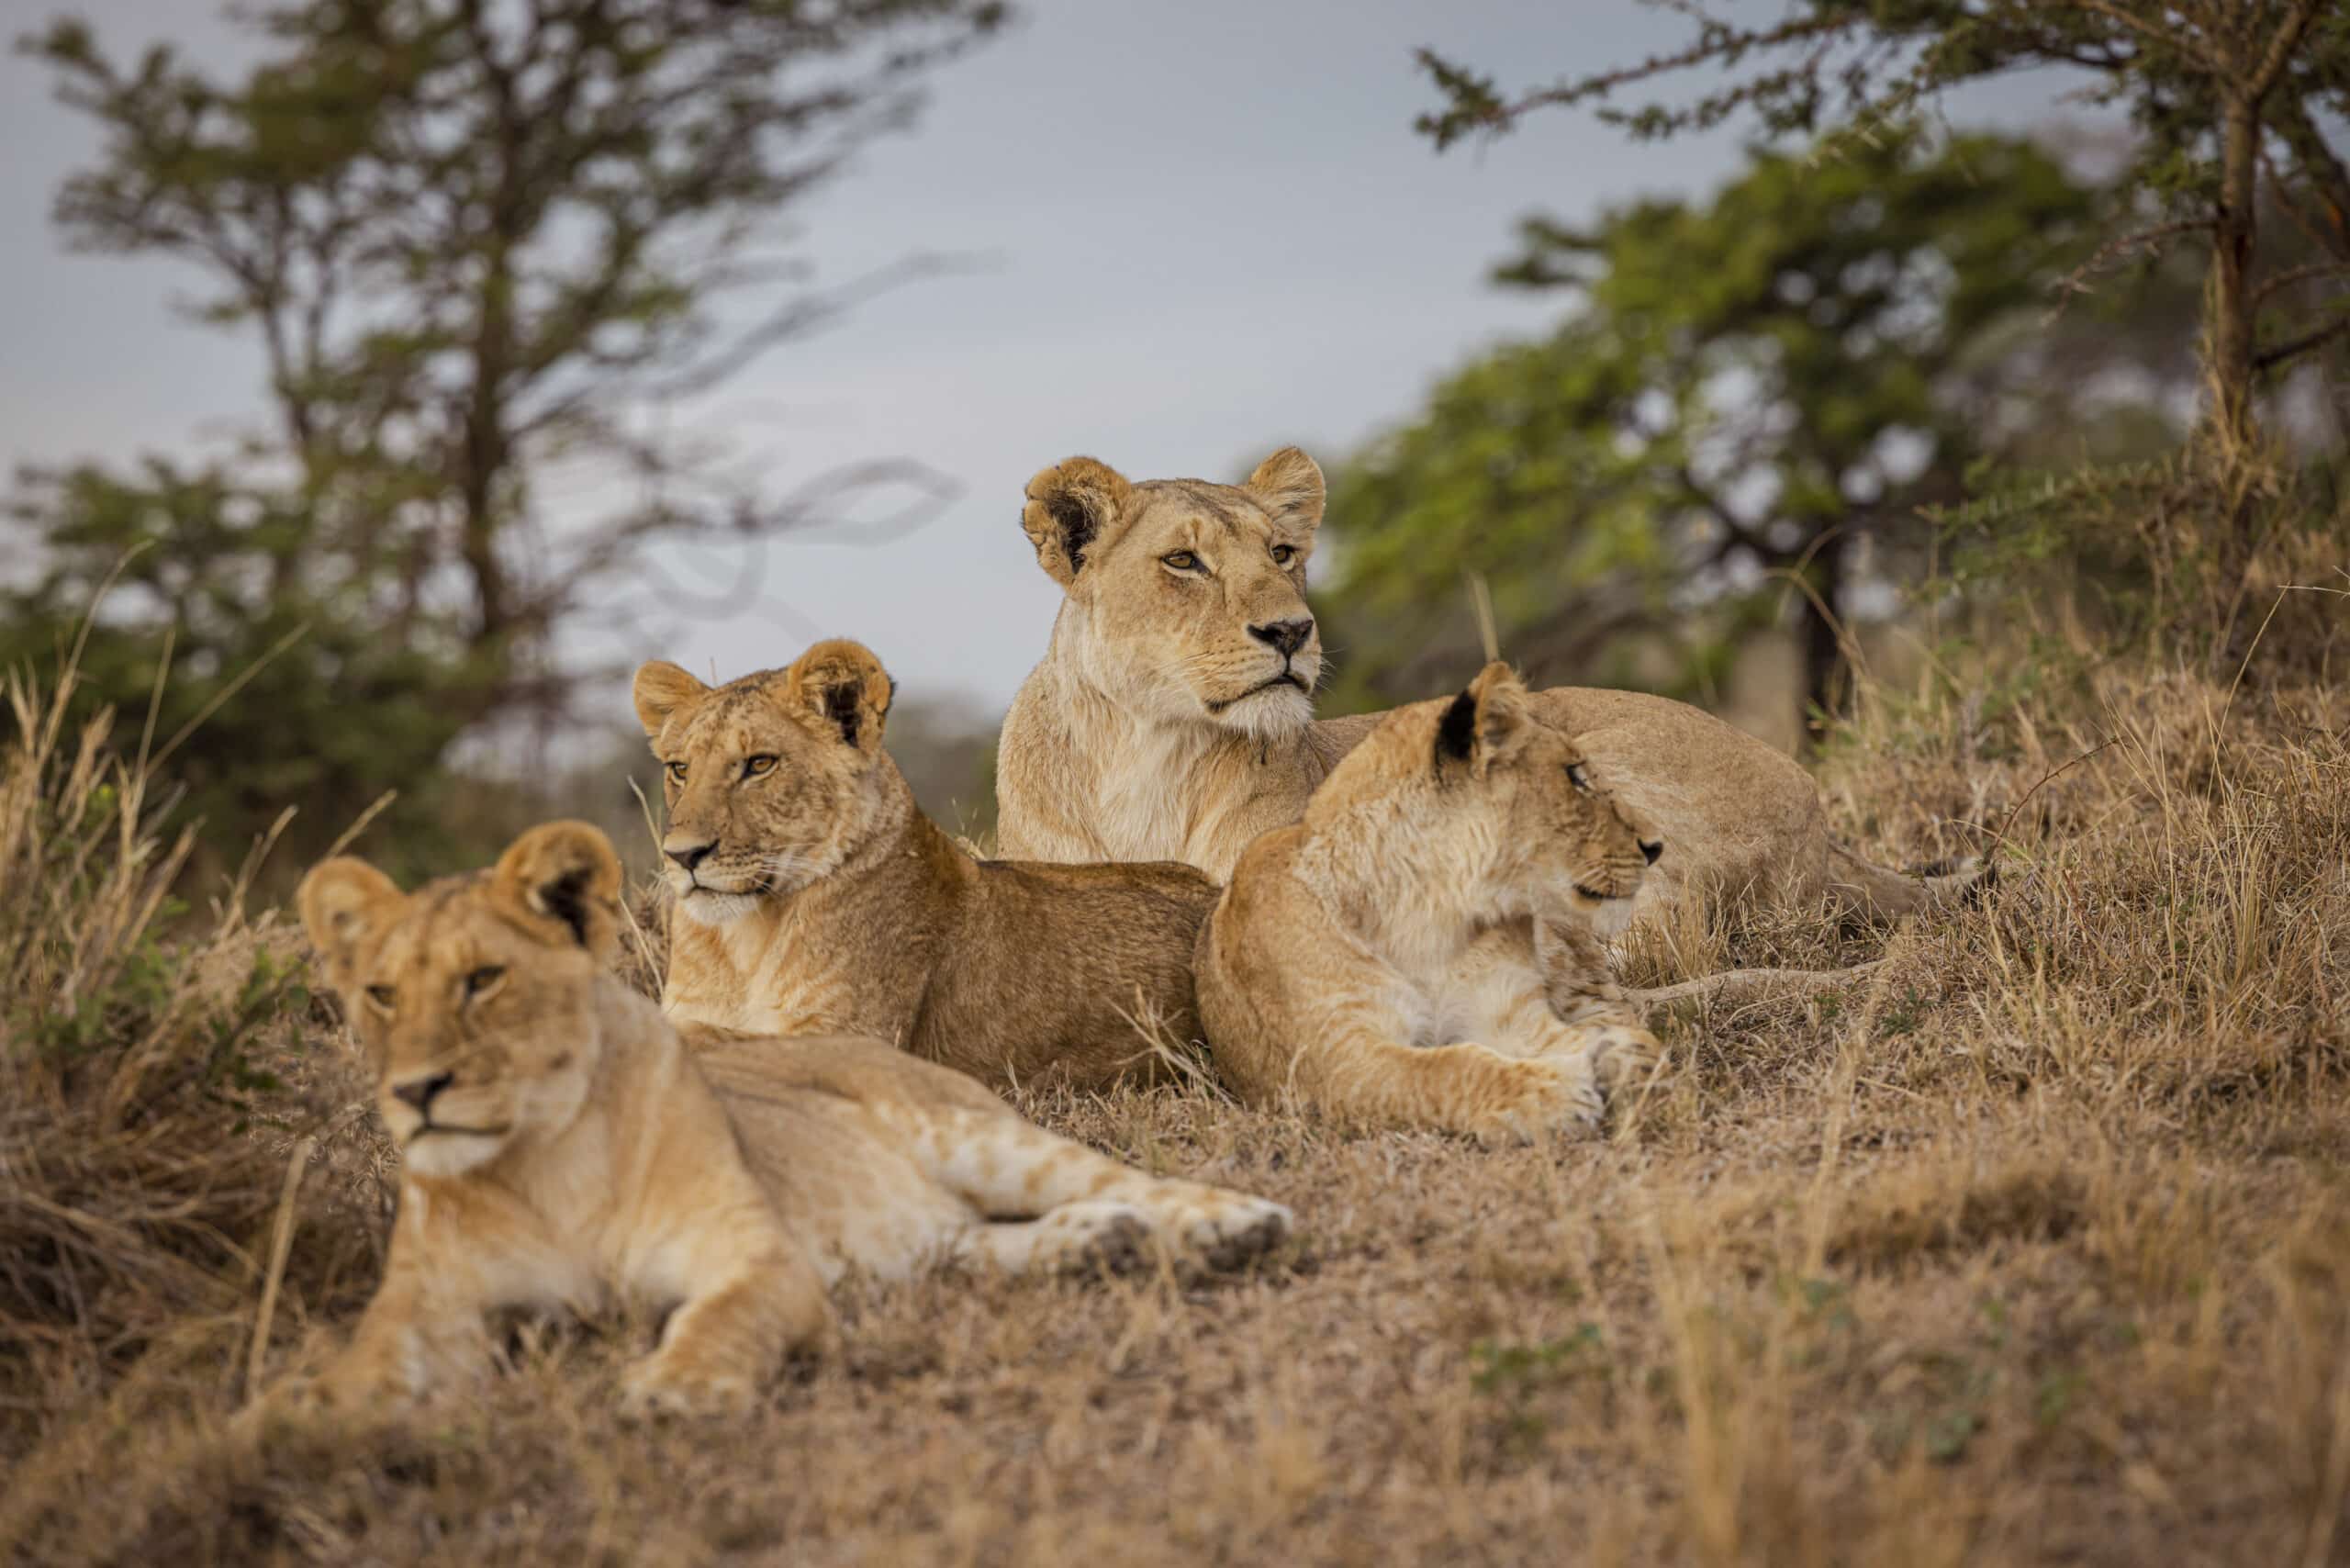 Ein Rudel von vier Löwen ruht im trockenen Gras, im Hintergrund spärlich vereinzelte Bäume, in einer natürlichen Savannenlandschaft. Der Fokus liegt auf einer sitzenden Löwin, die aufmerksam zur Seite blickt. © Fotografie Tomas Rodriguez